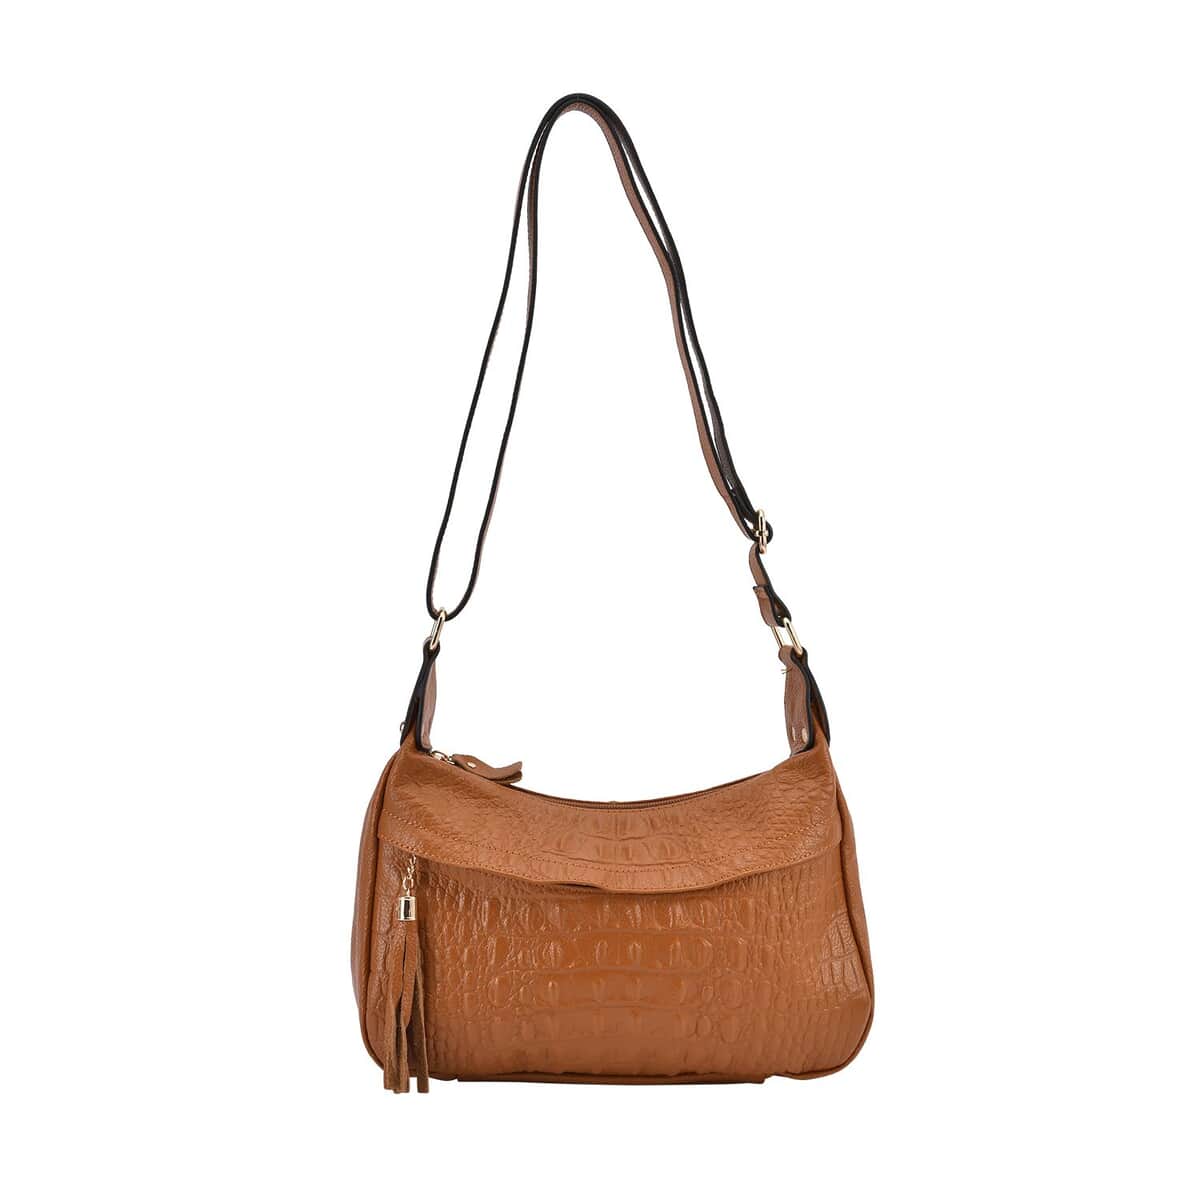 Le Donne Leather U-Zip Bag - Women's Designer Leather Sling/Backpack -  Versatile Bag With Adjustable & Convertible Strap